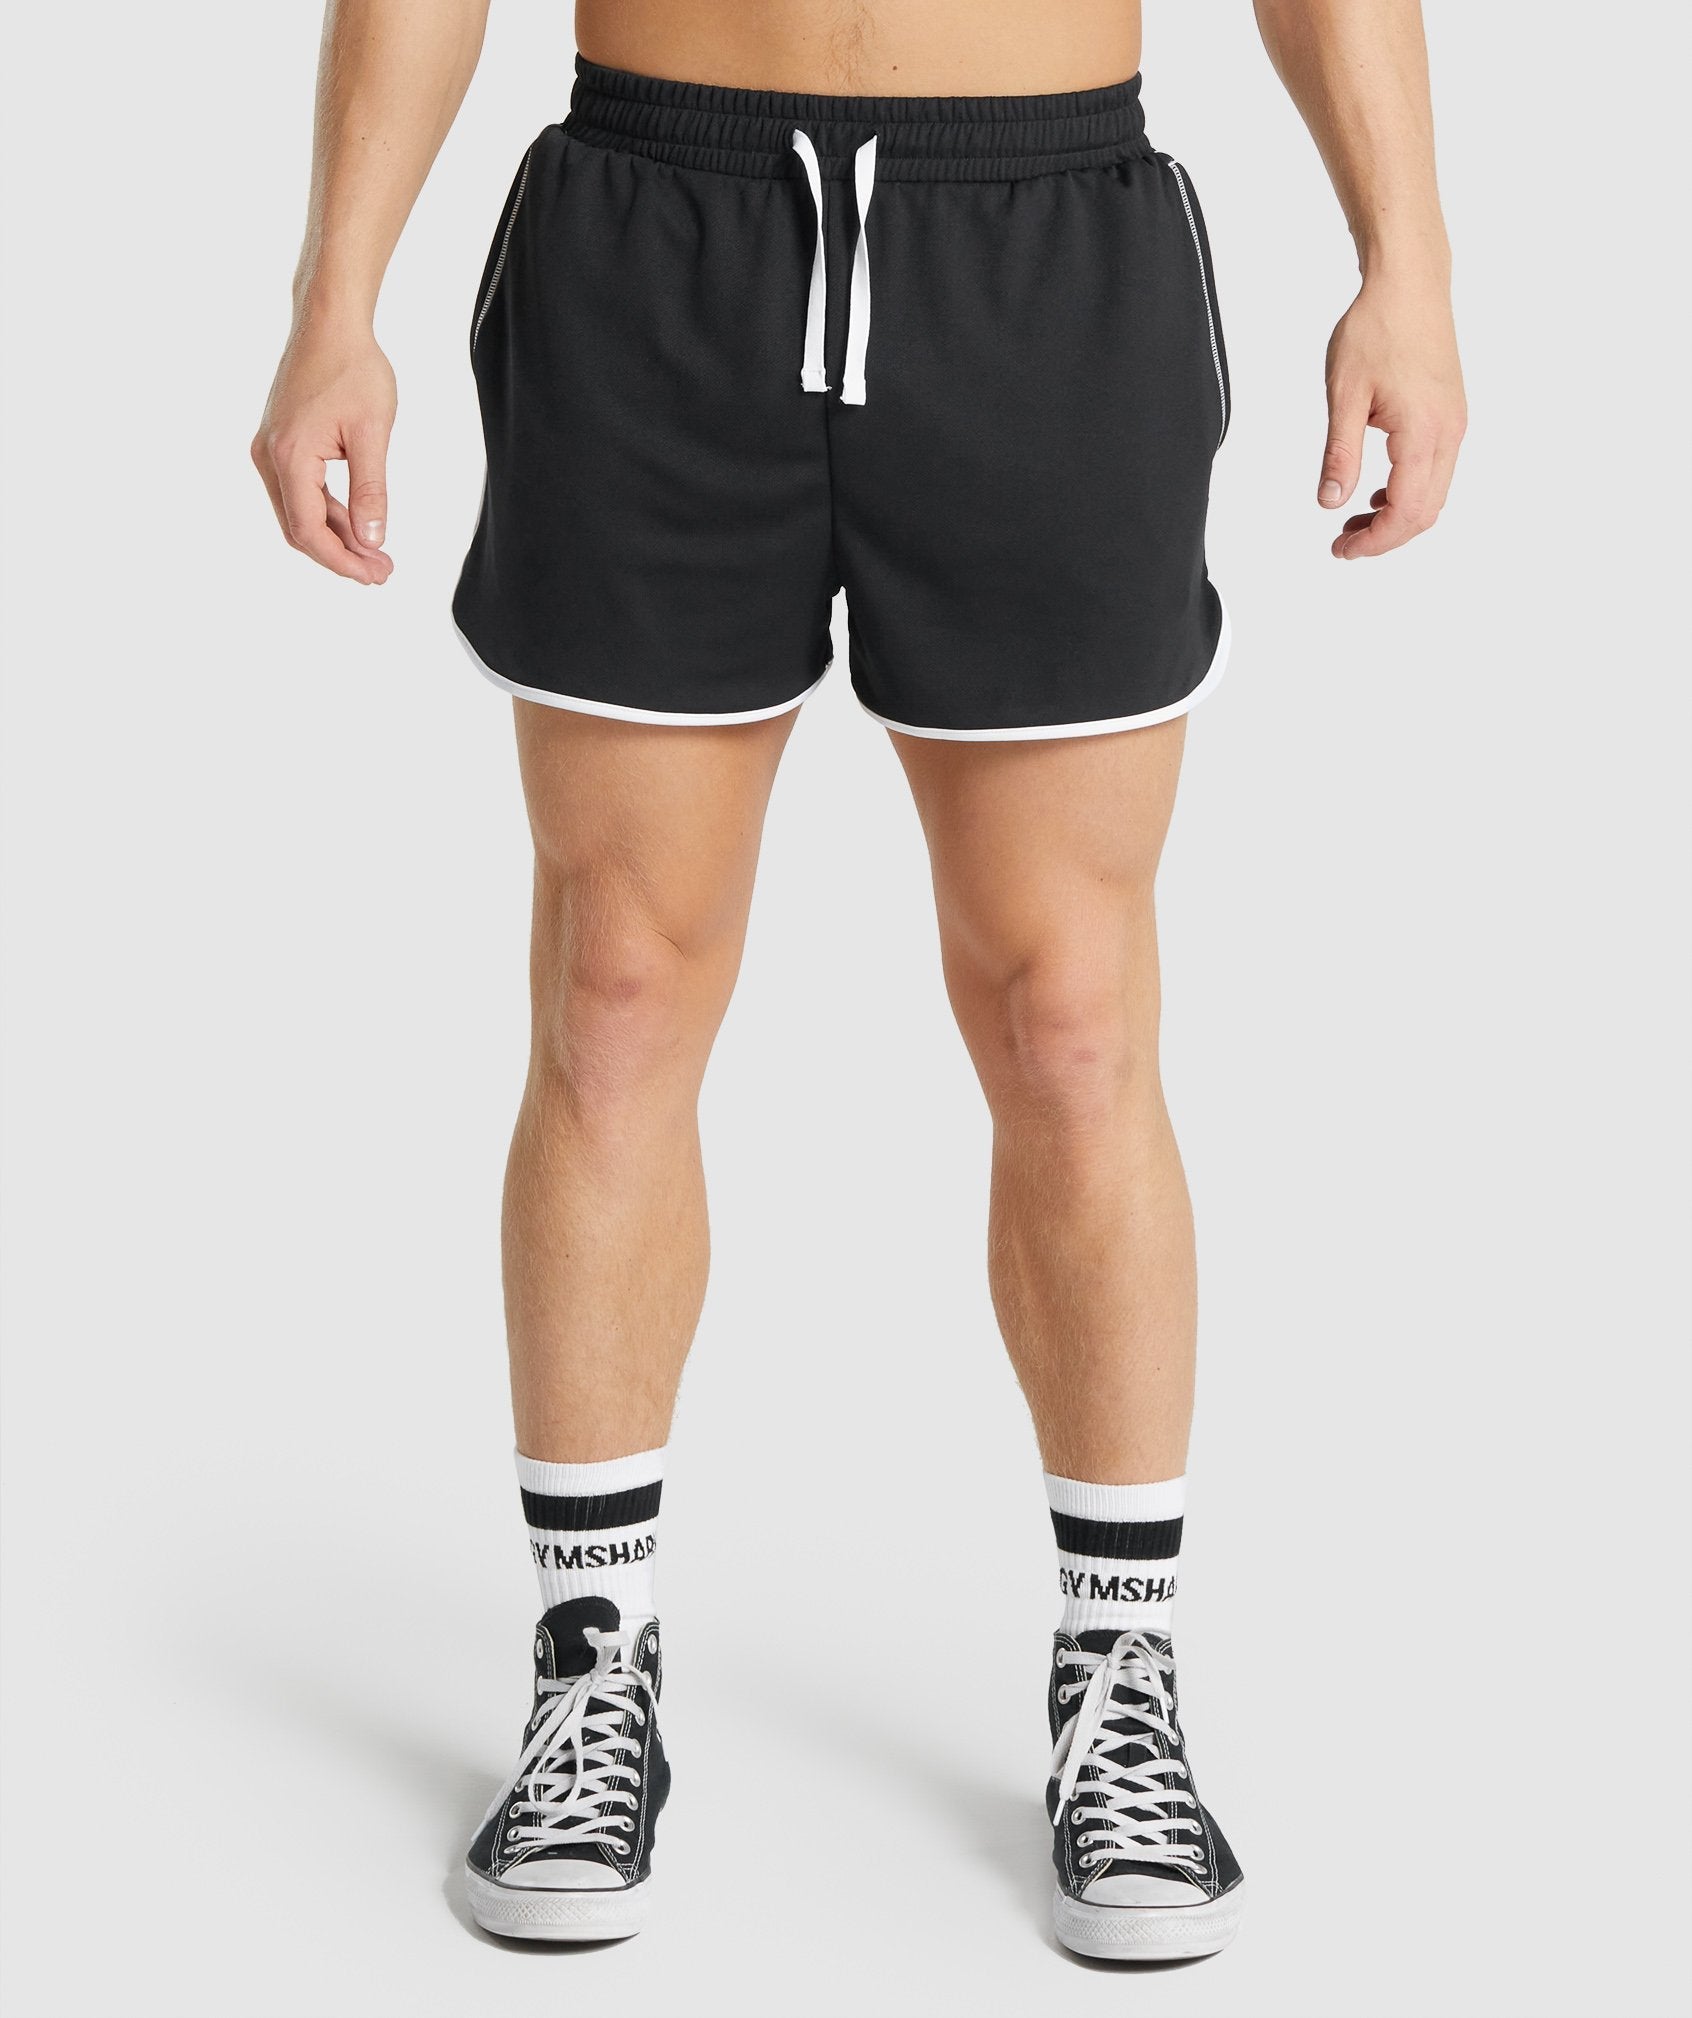 Recess 3" Quad Shorts in Black